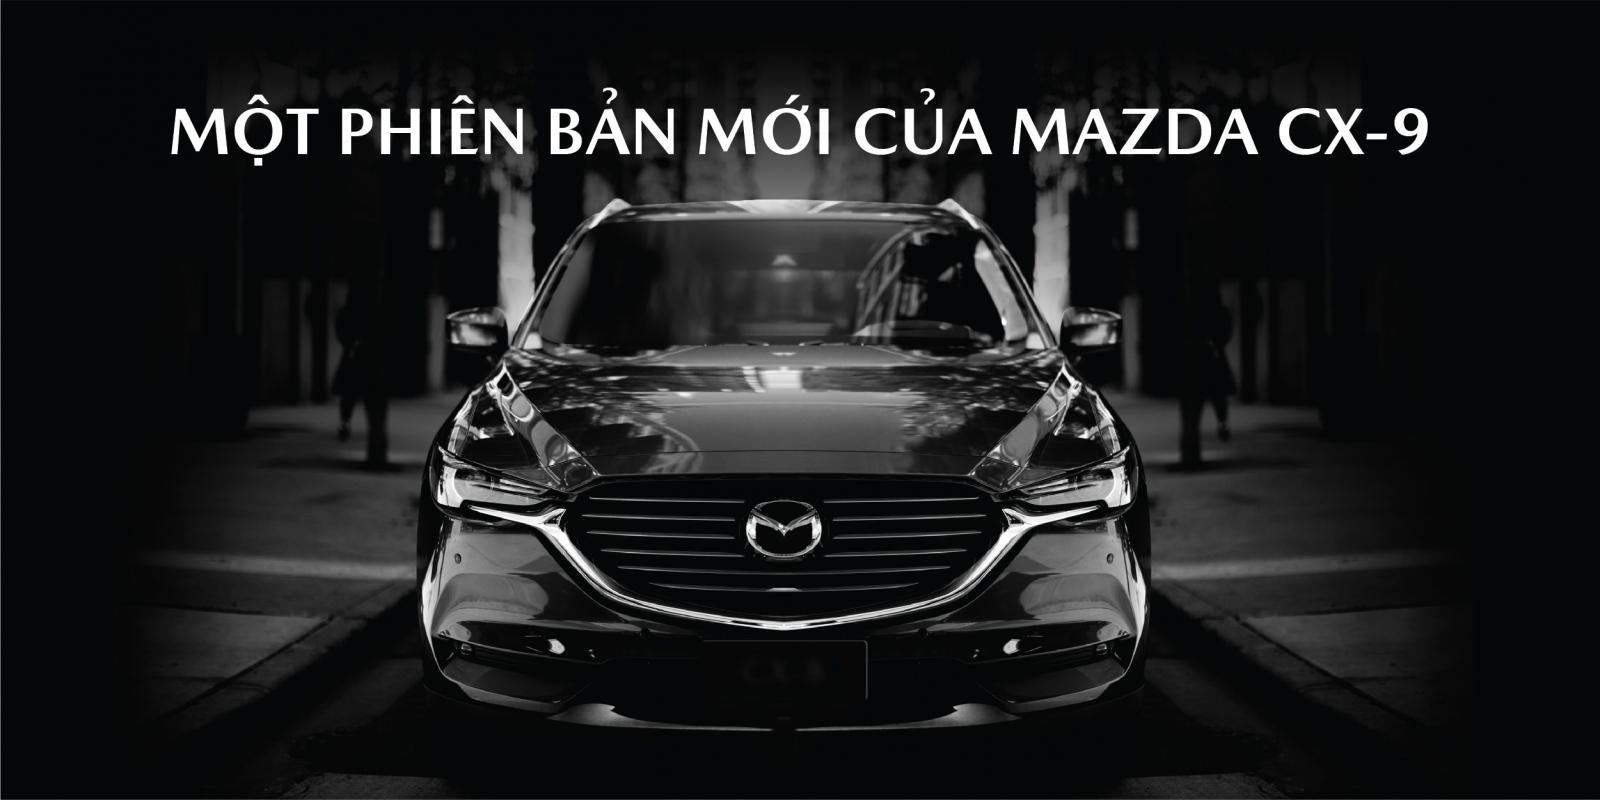  Giá xe Mazda CX-8 2019 chỉ còn từ 1,149 triệu đồng dành cho những khách hàng đầu tiên đặt mua. 